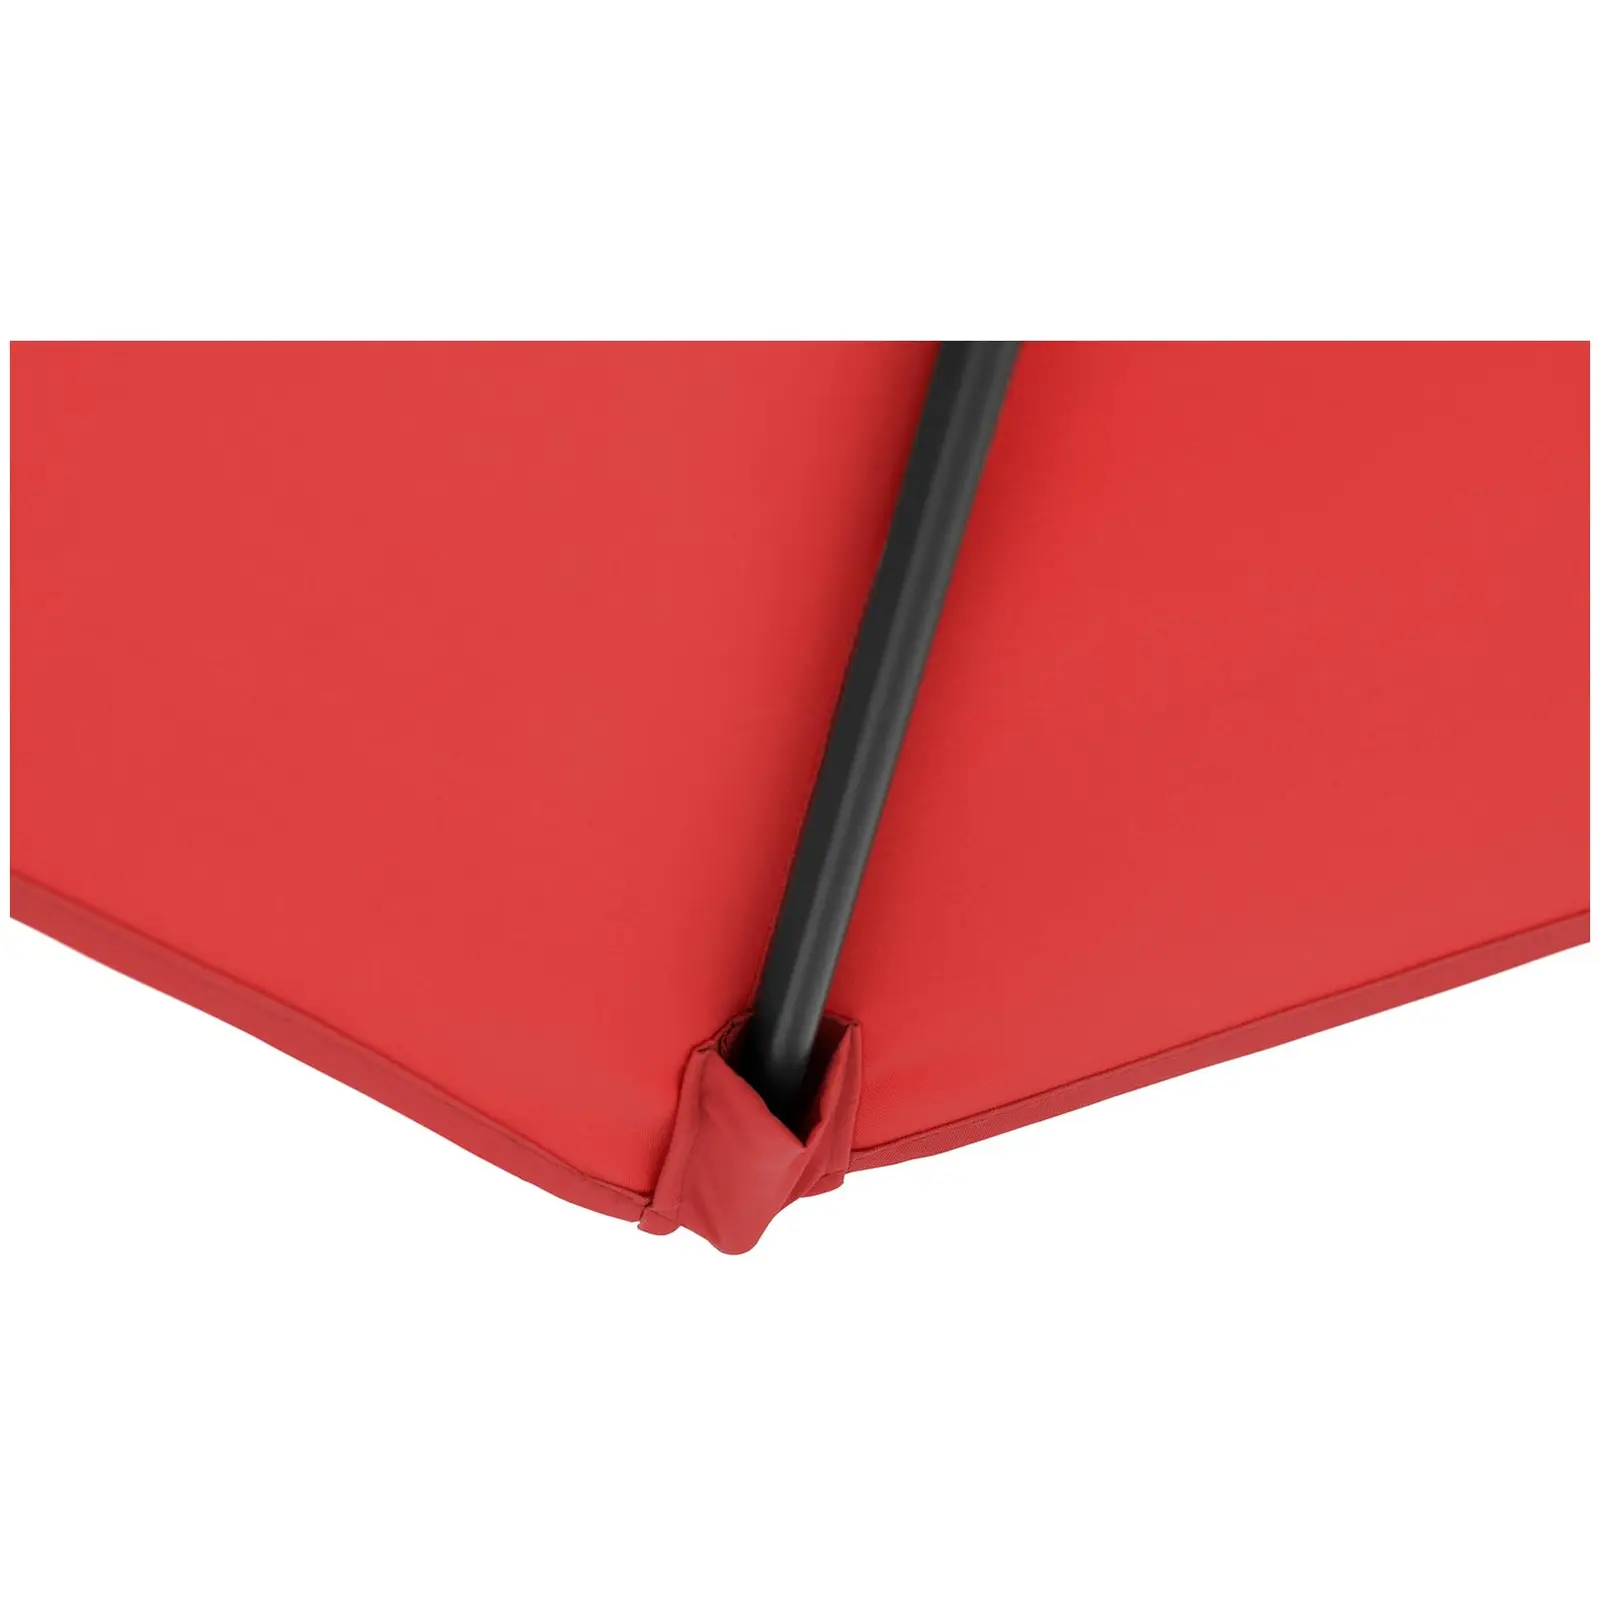 Andrahandssortering Hängparasoll - rött - rektangulärt - 250 x 250 cm - kan lutas